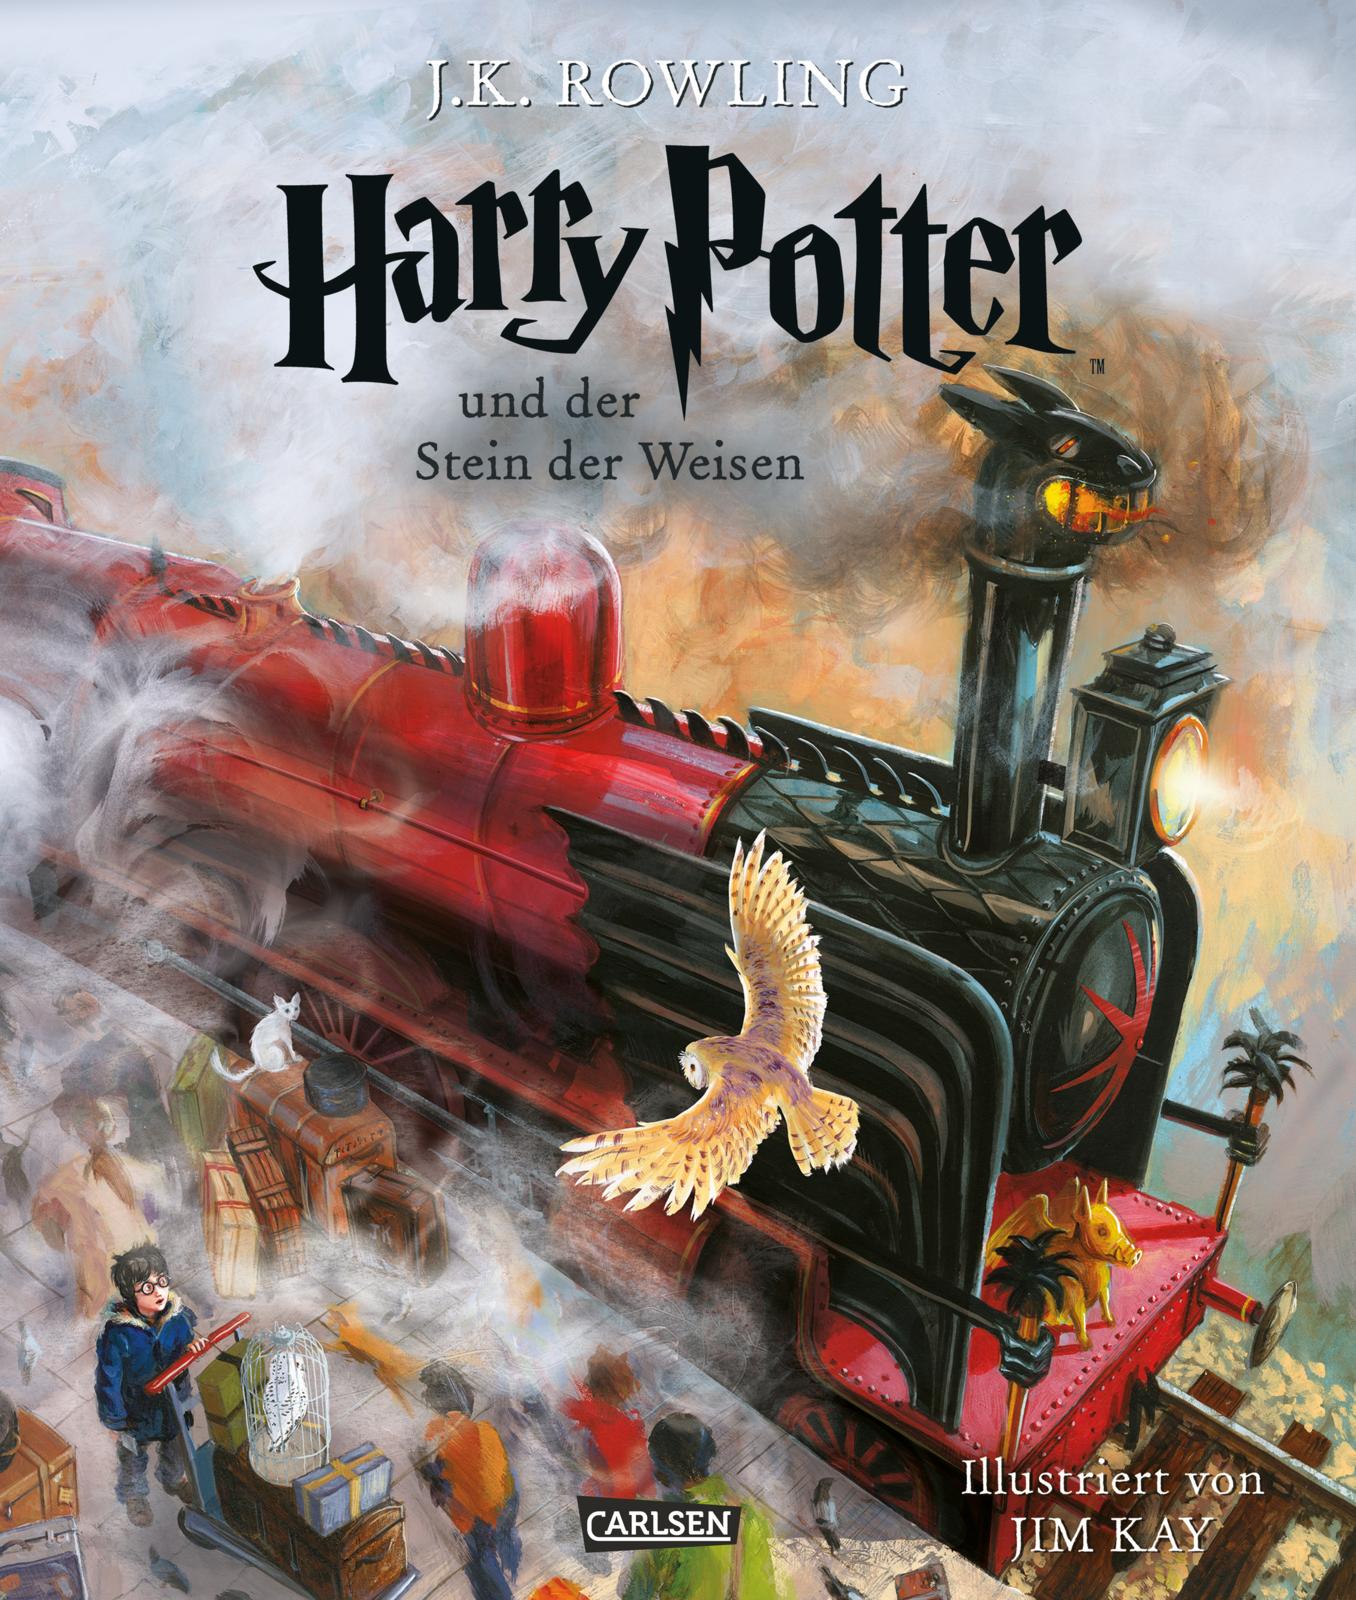 Harry Potter - Band 1 - Harry Potter und der Stein der Weisen (farbig illustrierte Schmuckausgabe) - Hardcover